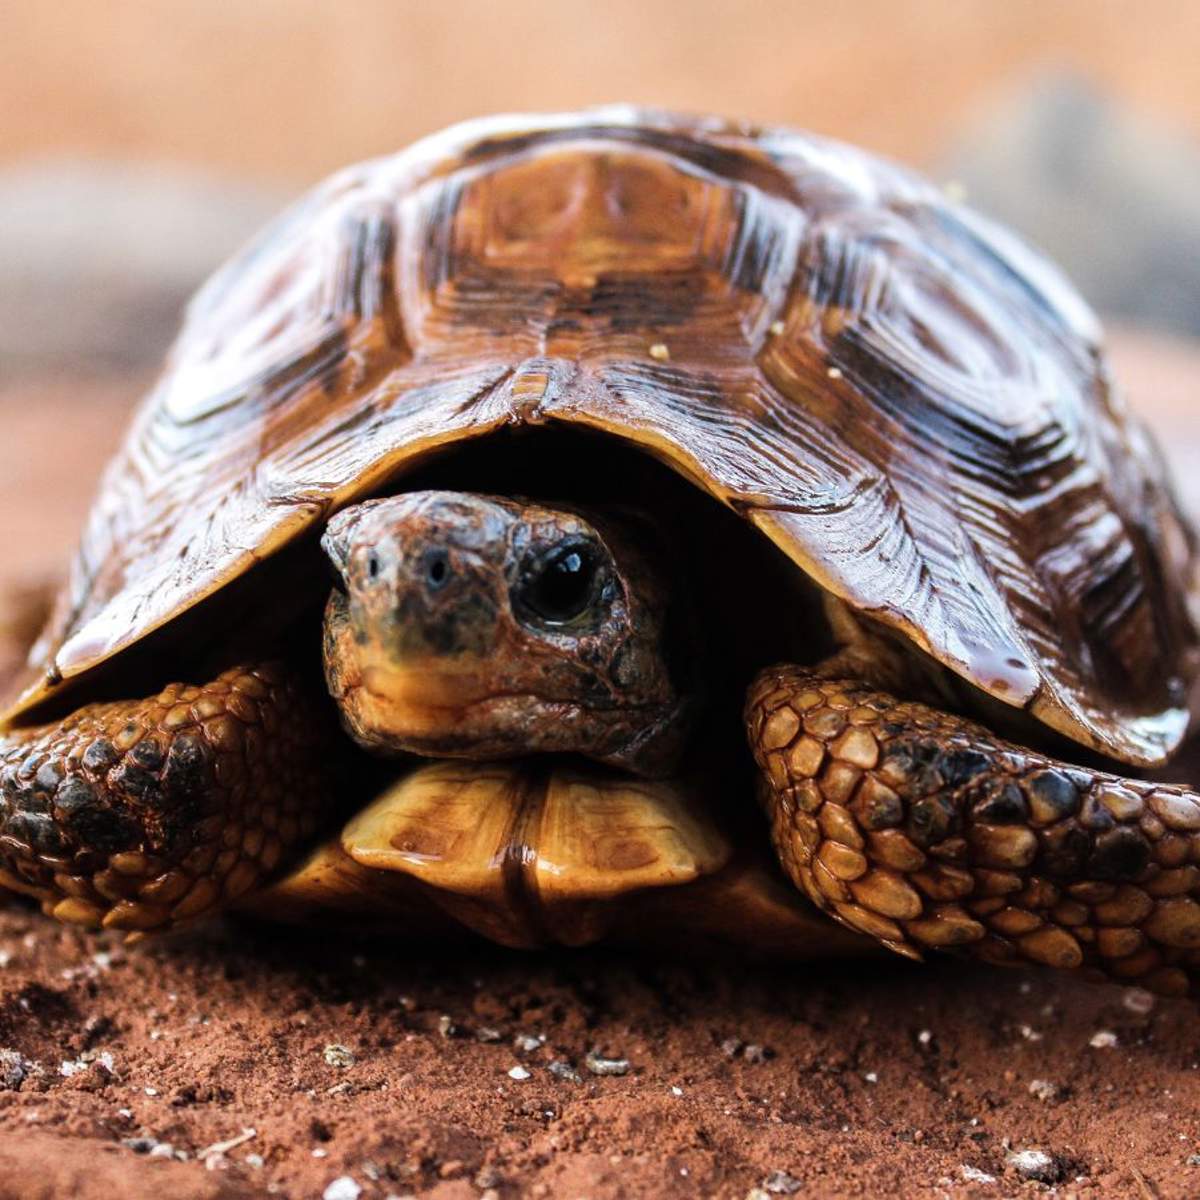 Soñar con tortugas: ¿qué significa y cómo debemos interpretarlo?